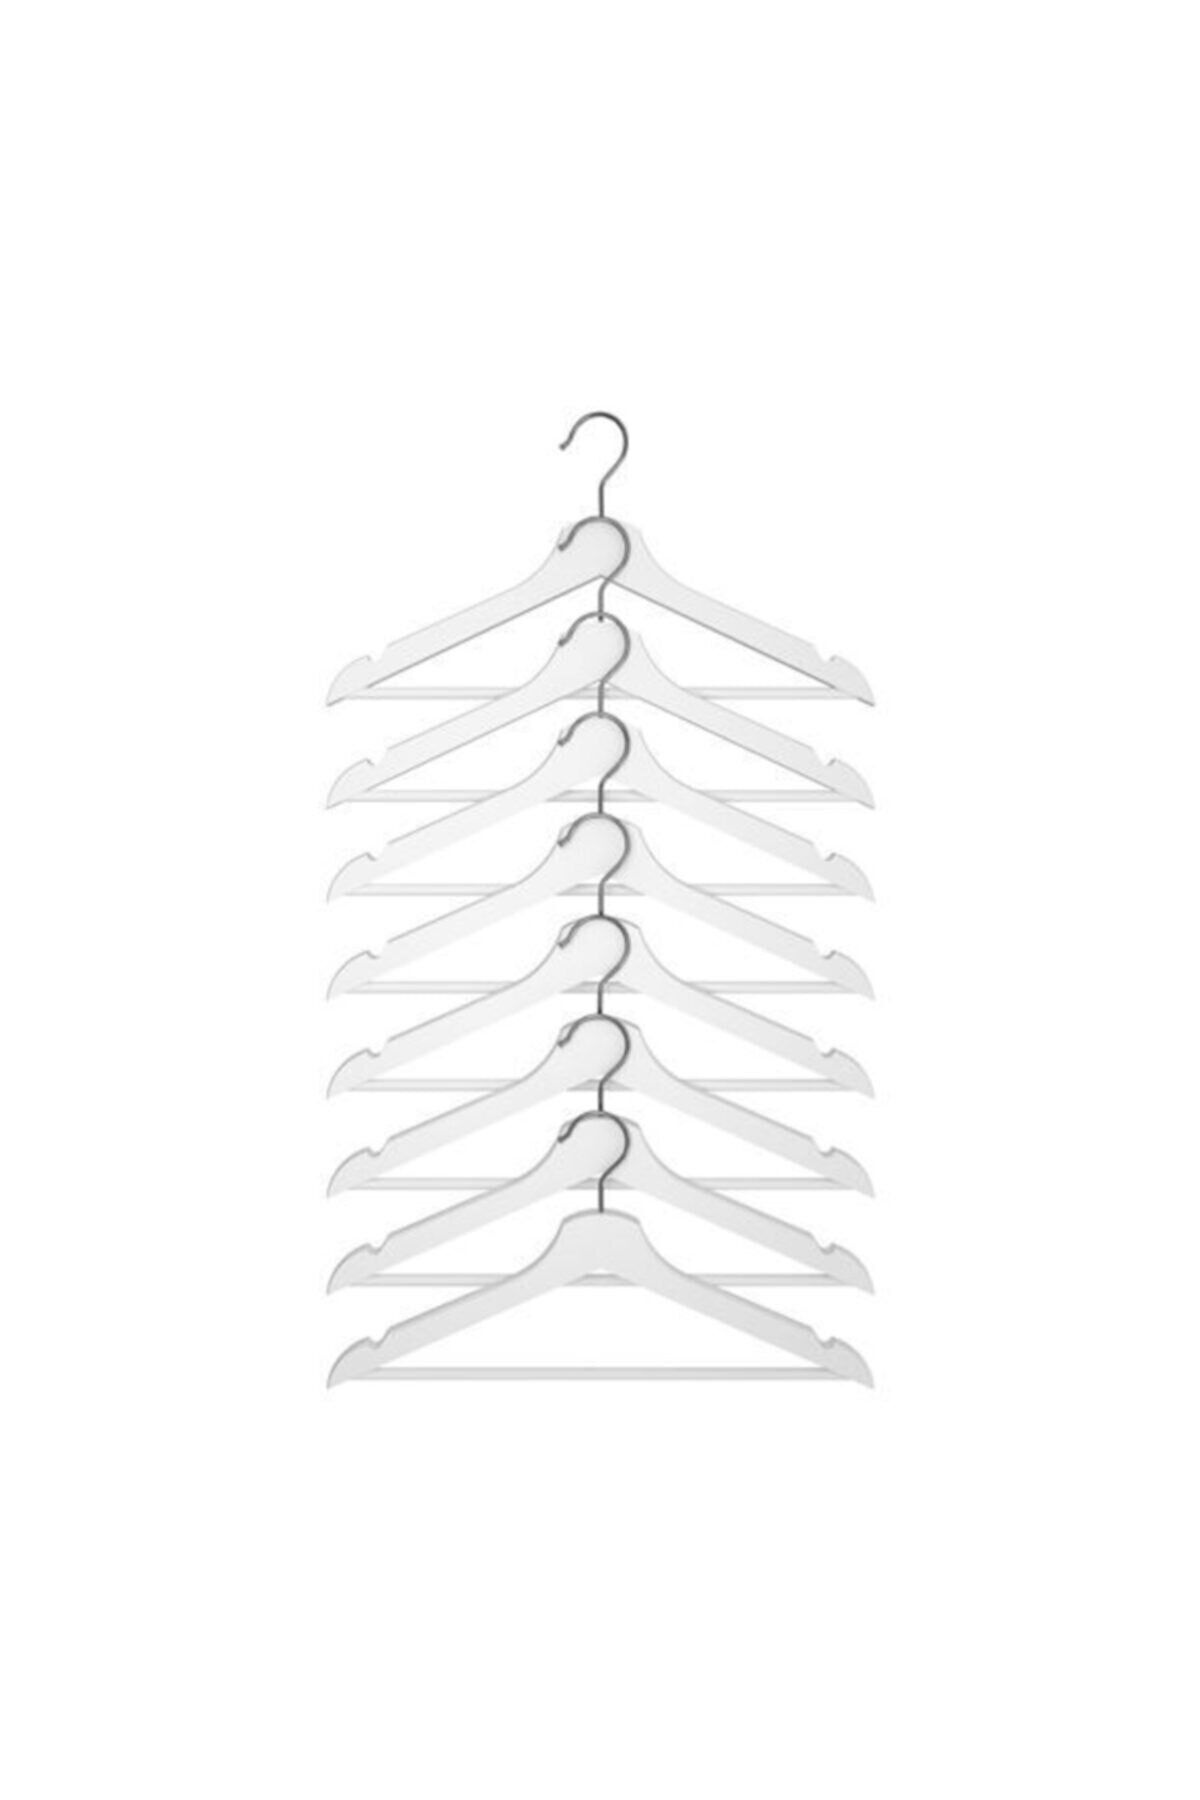 IKEA Bumerang Elbise Giysi Askısı - Beyaz Askı 8 Li Paket